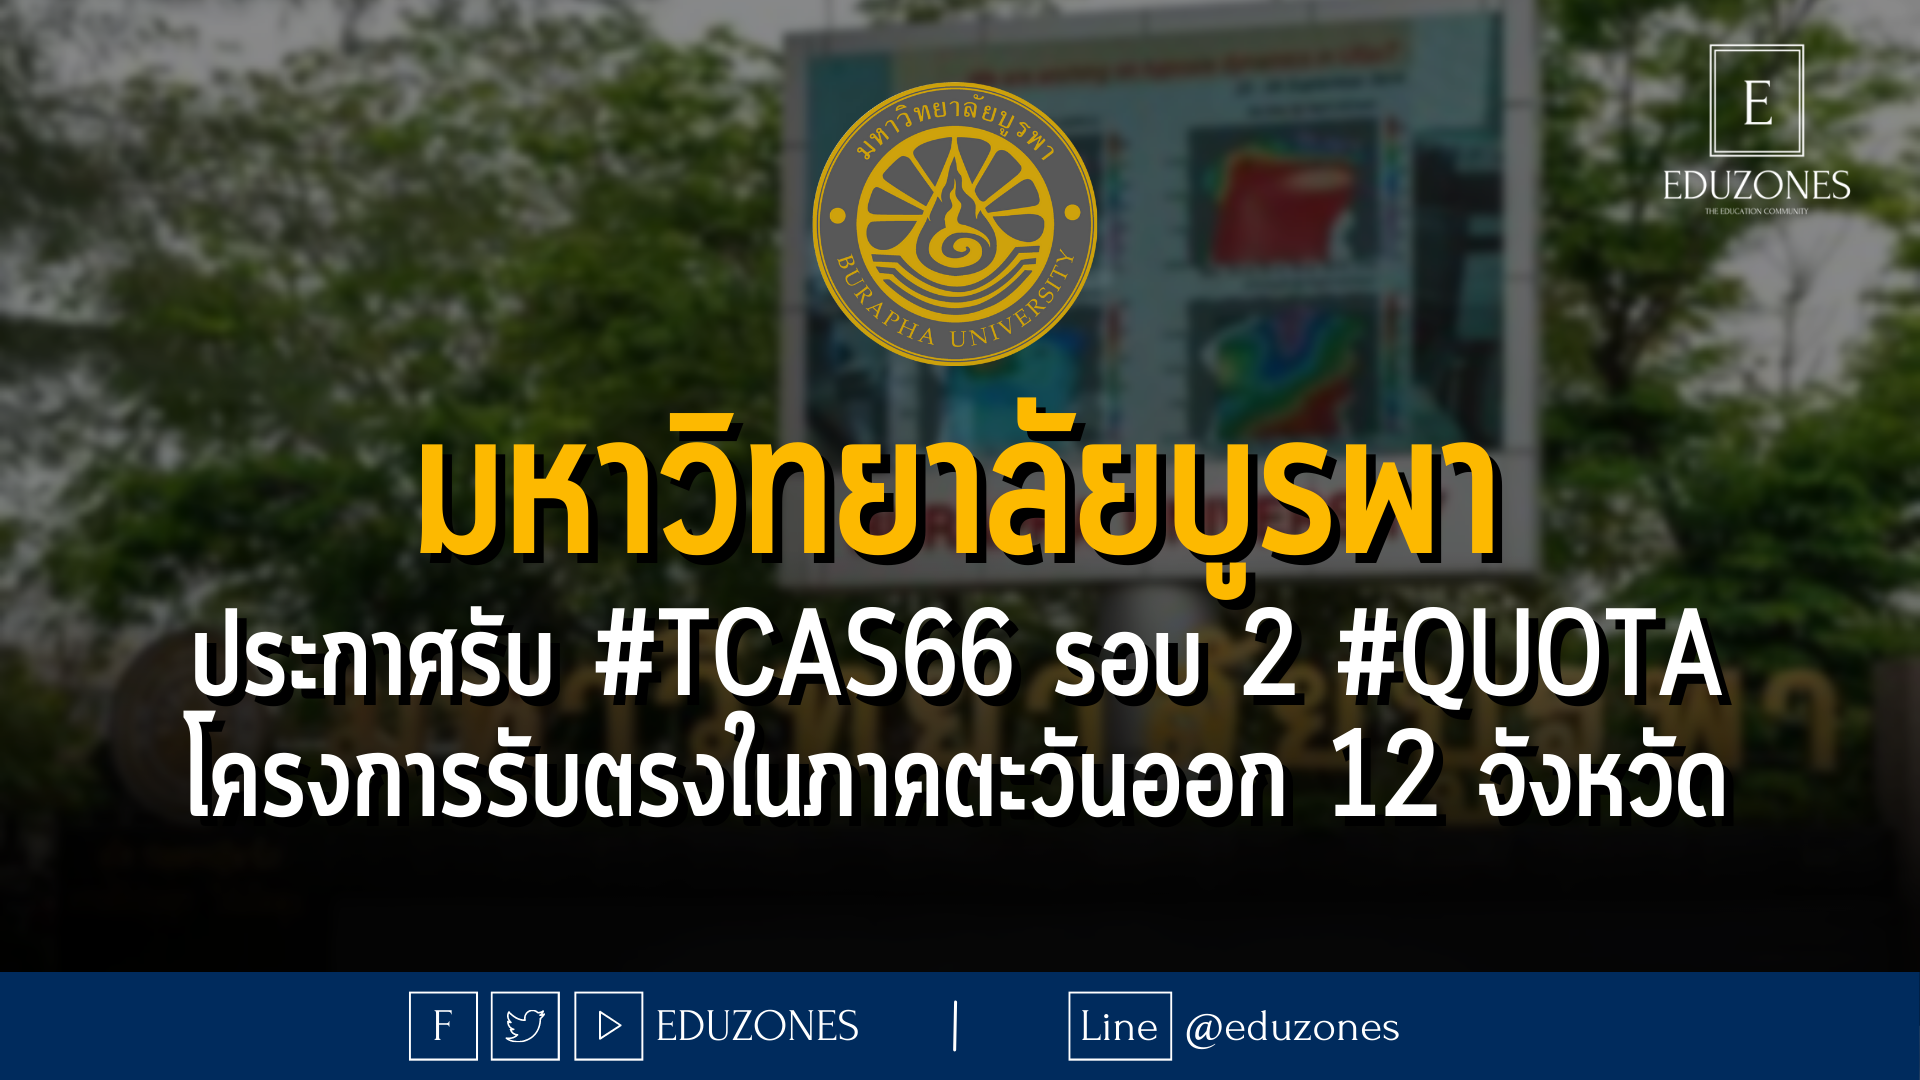 มหาวิทยาลัยบูรพา ประกาศรับ #TCAS66 รอบ 2 #QUOTA โครงการรับตรงในภาคตะวันออก 12 จังหวัด - หมดเขต 16 เมษายน 2566 